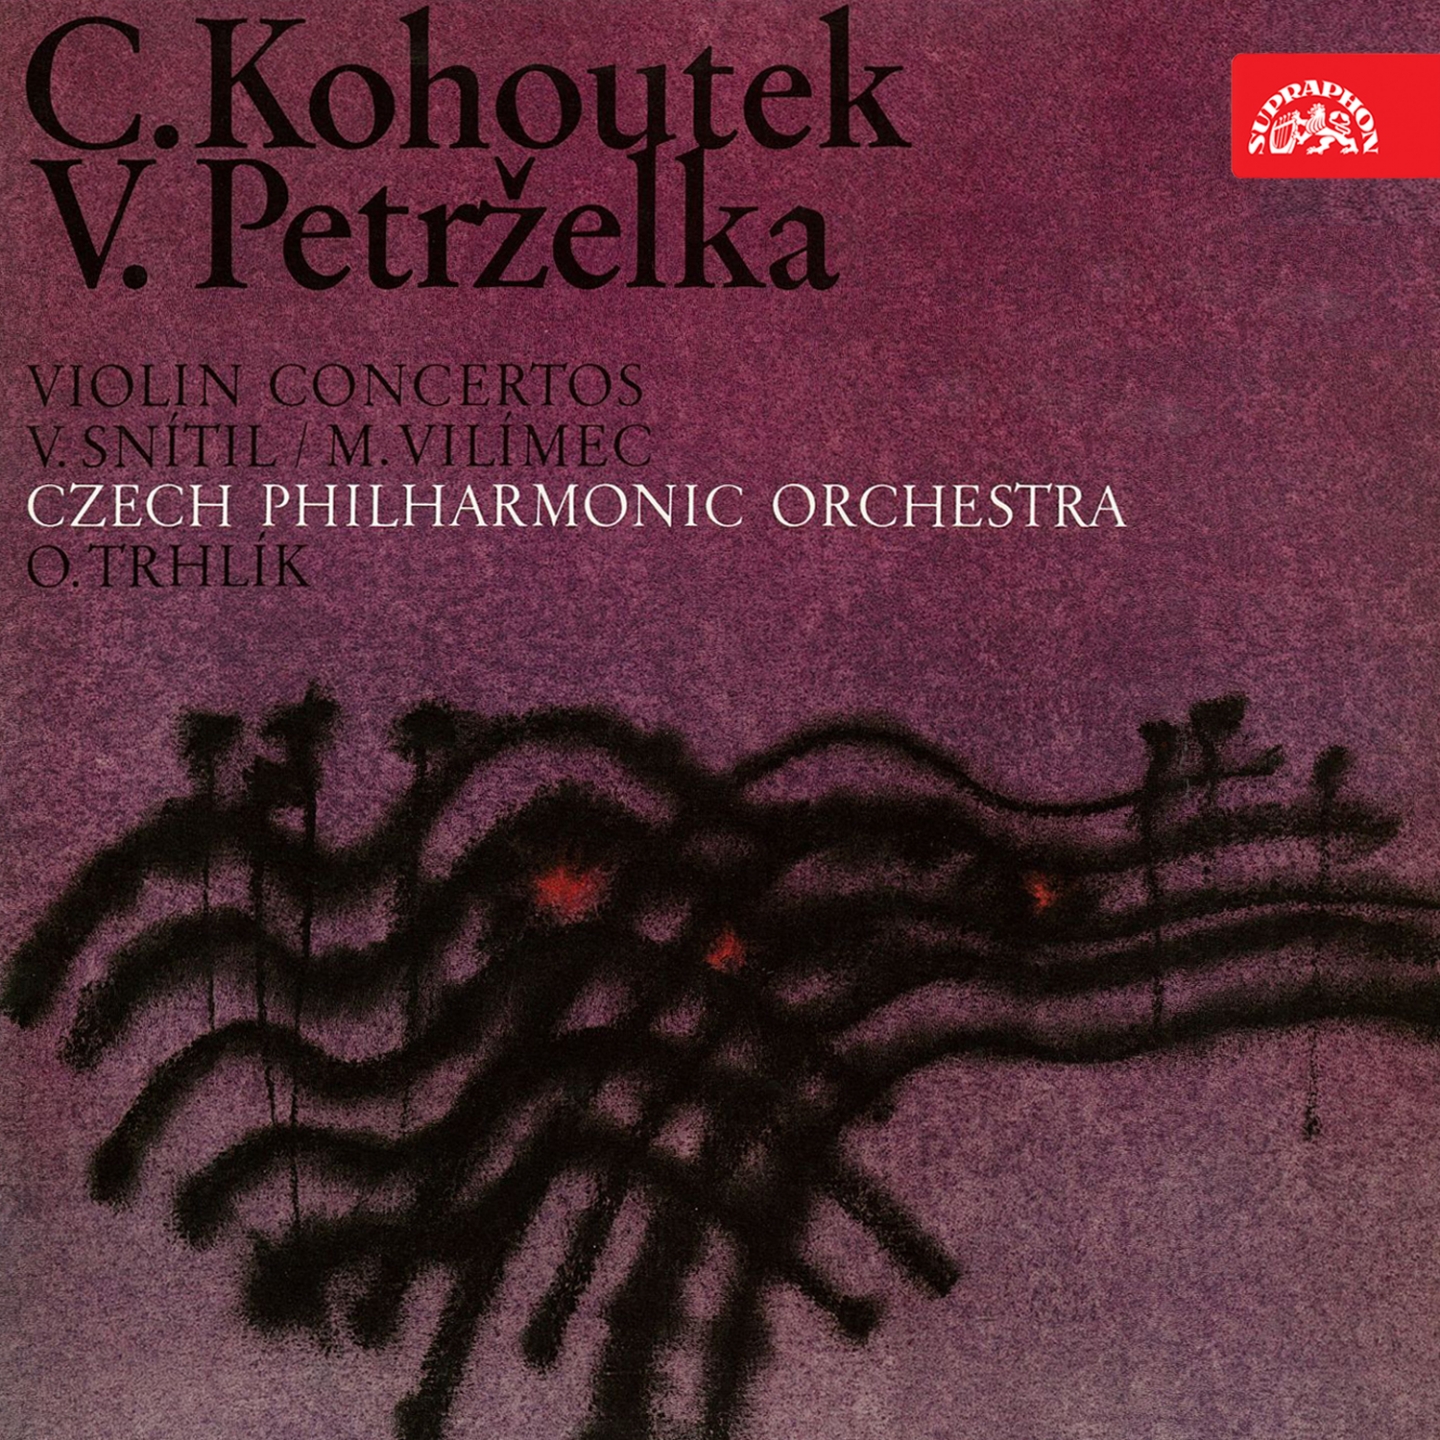 Kohoutek, Petr elka: Violin Concertos